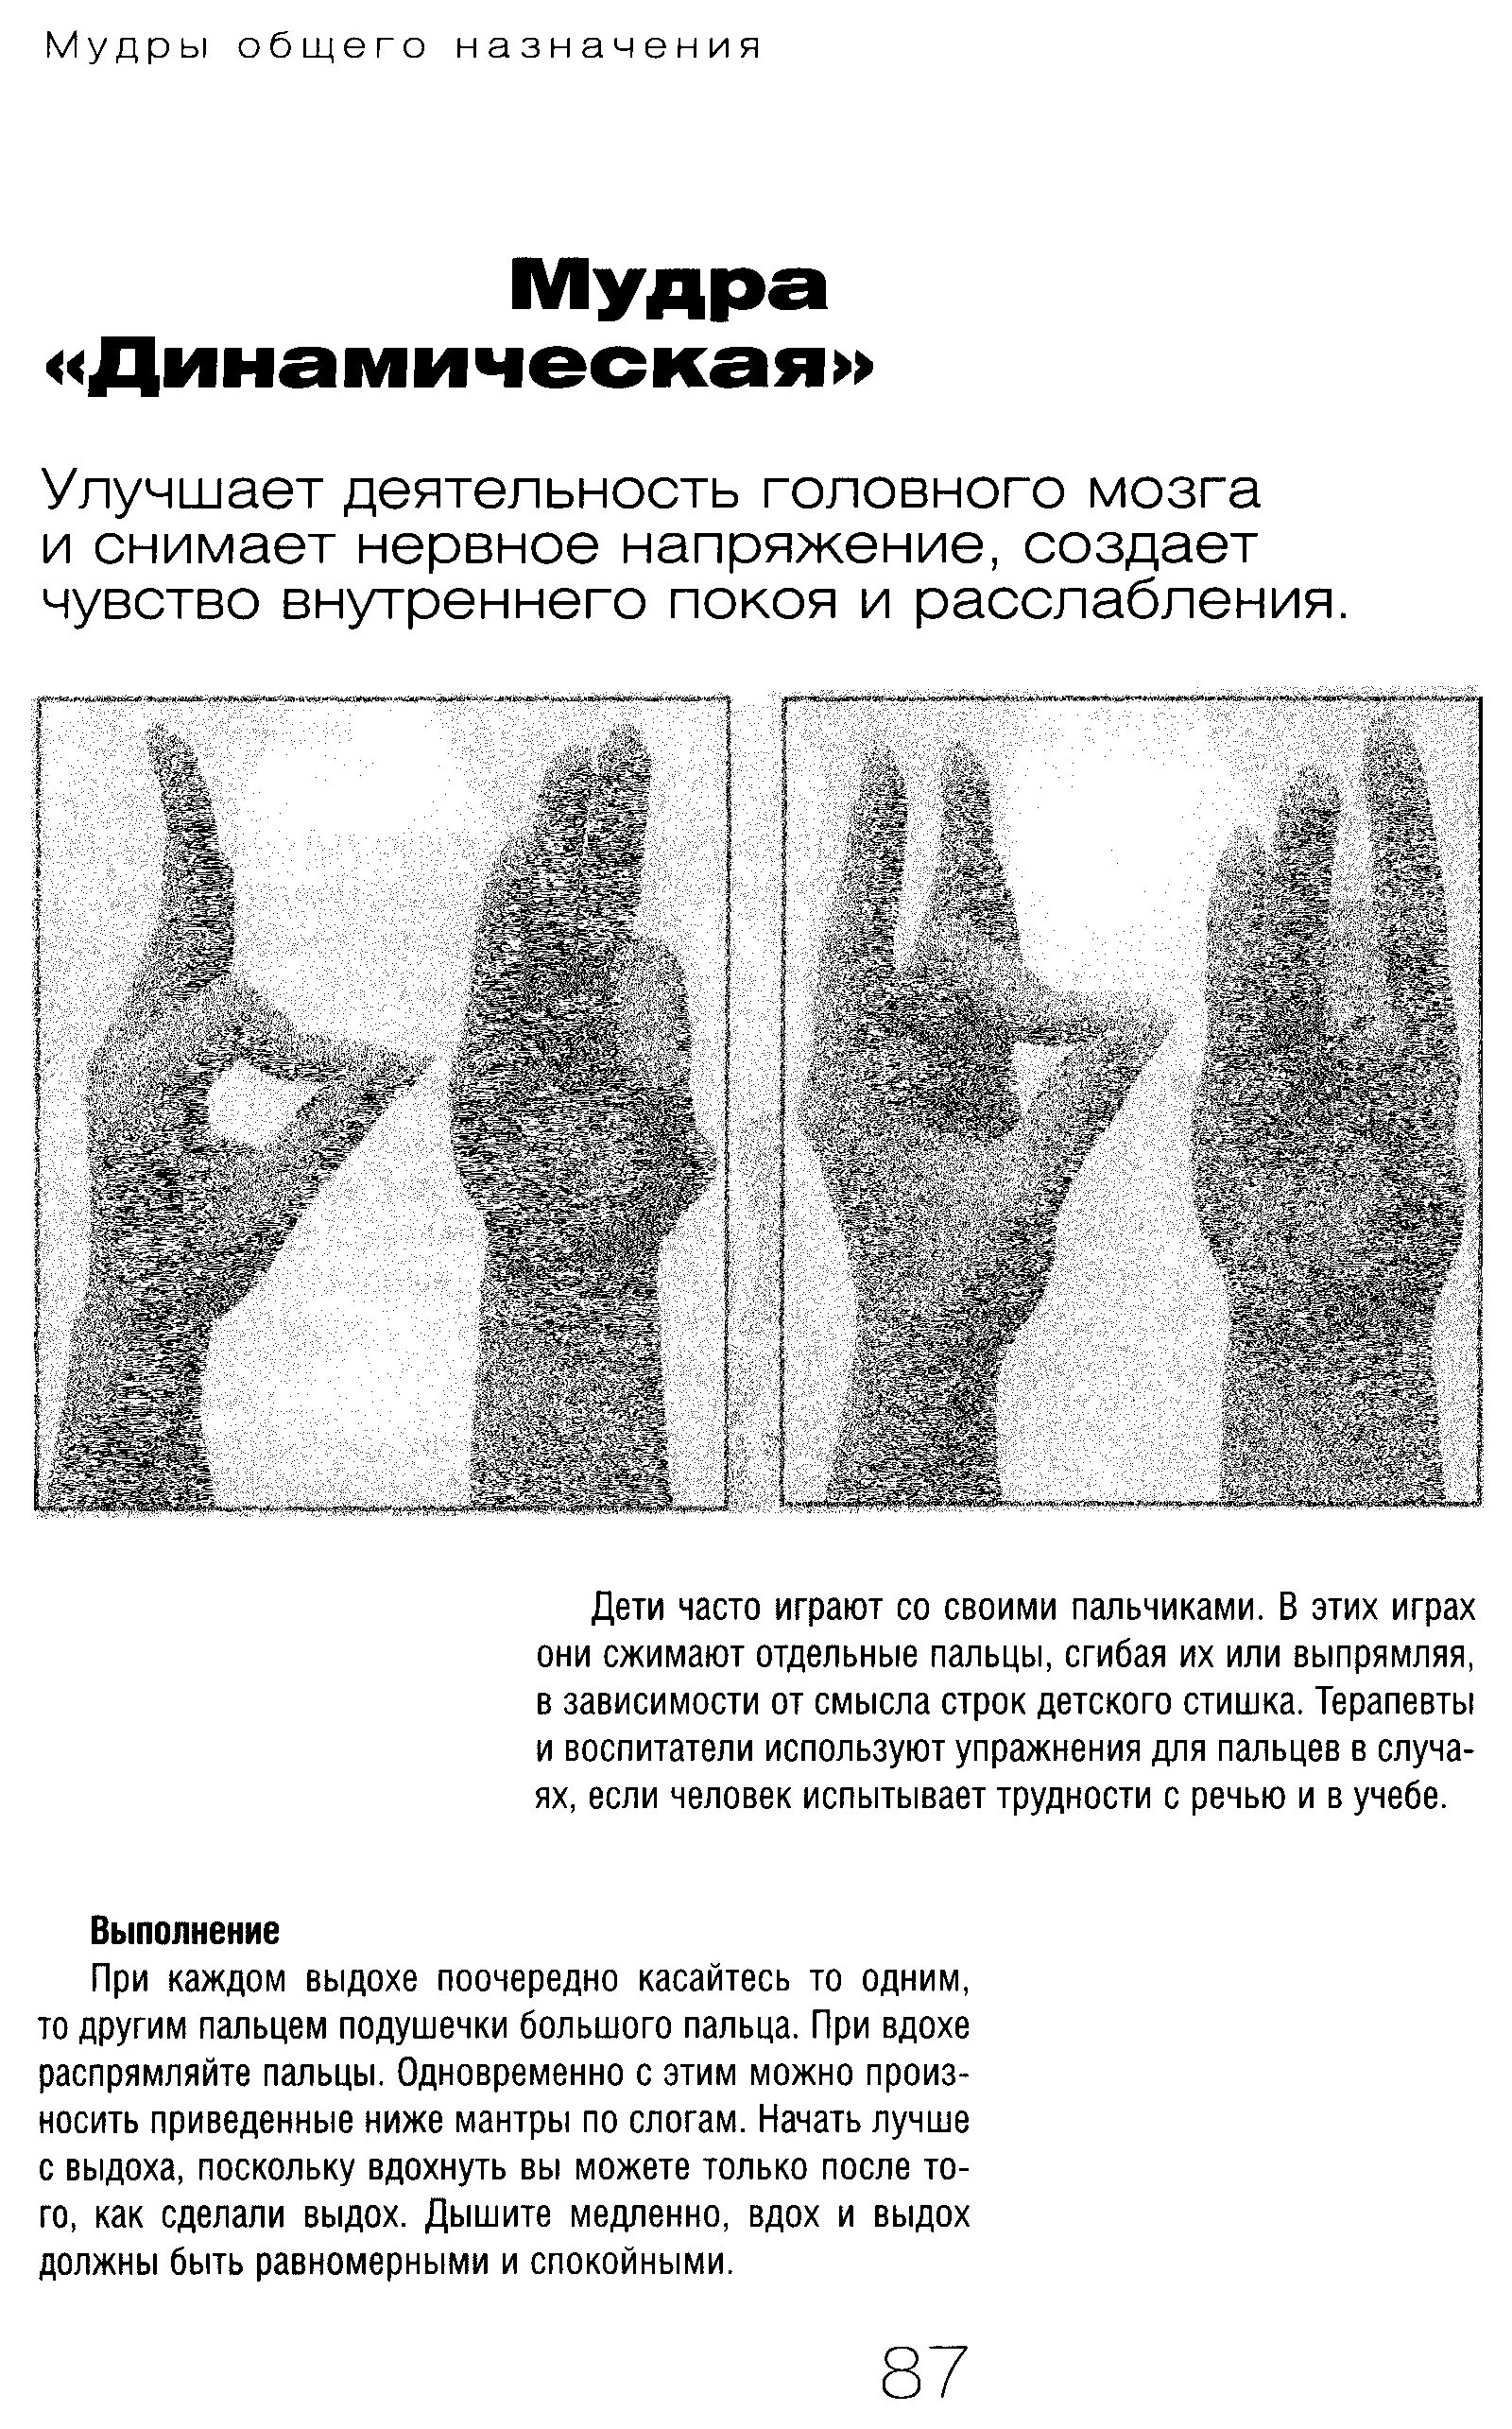 Мудры гимнастика для пальцев рук. Йога для пальцев исцеляющие мудры. Мудры для пальцев рук йога для пальцев. Мудры упражнения для пальцев рук. Как использовать мудры